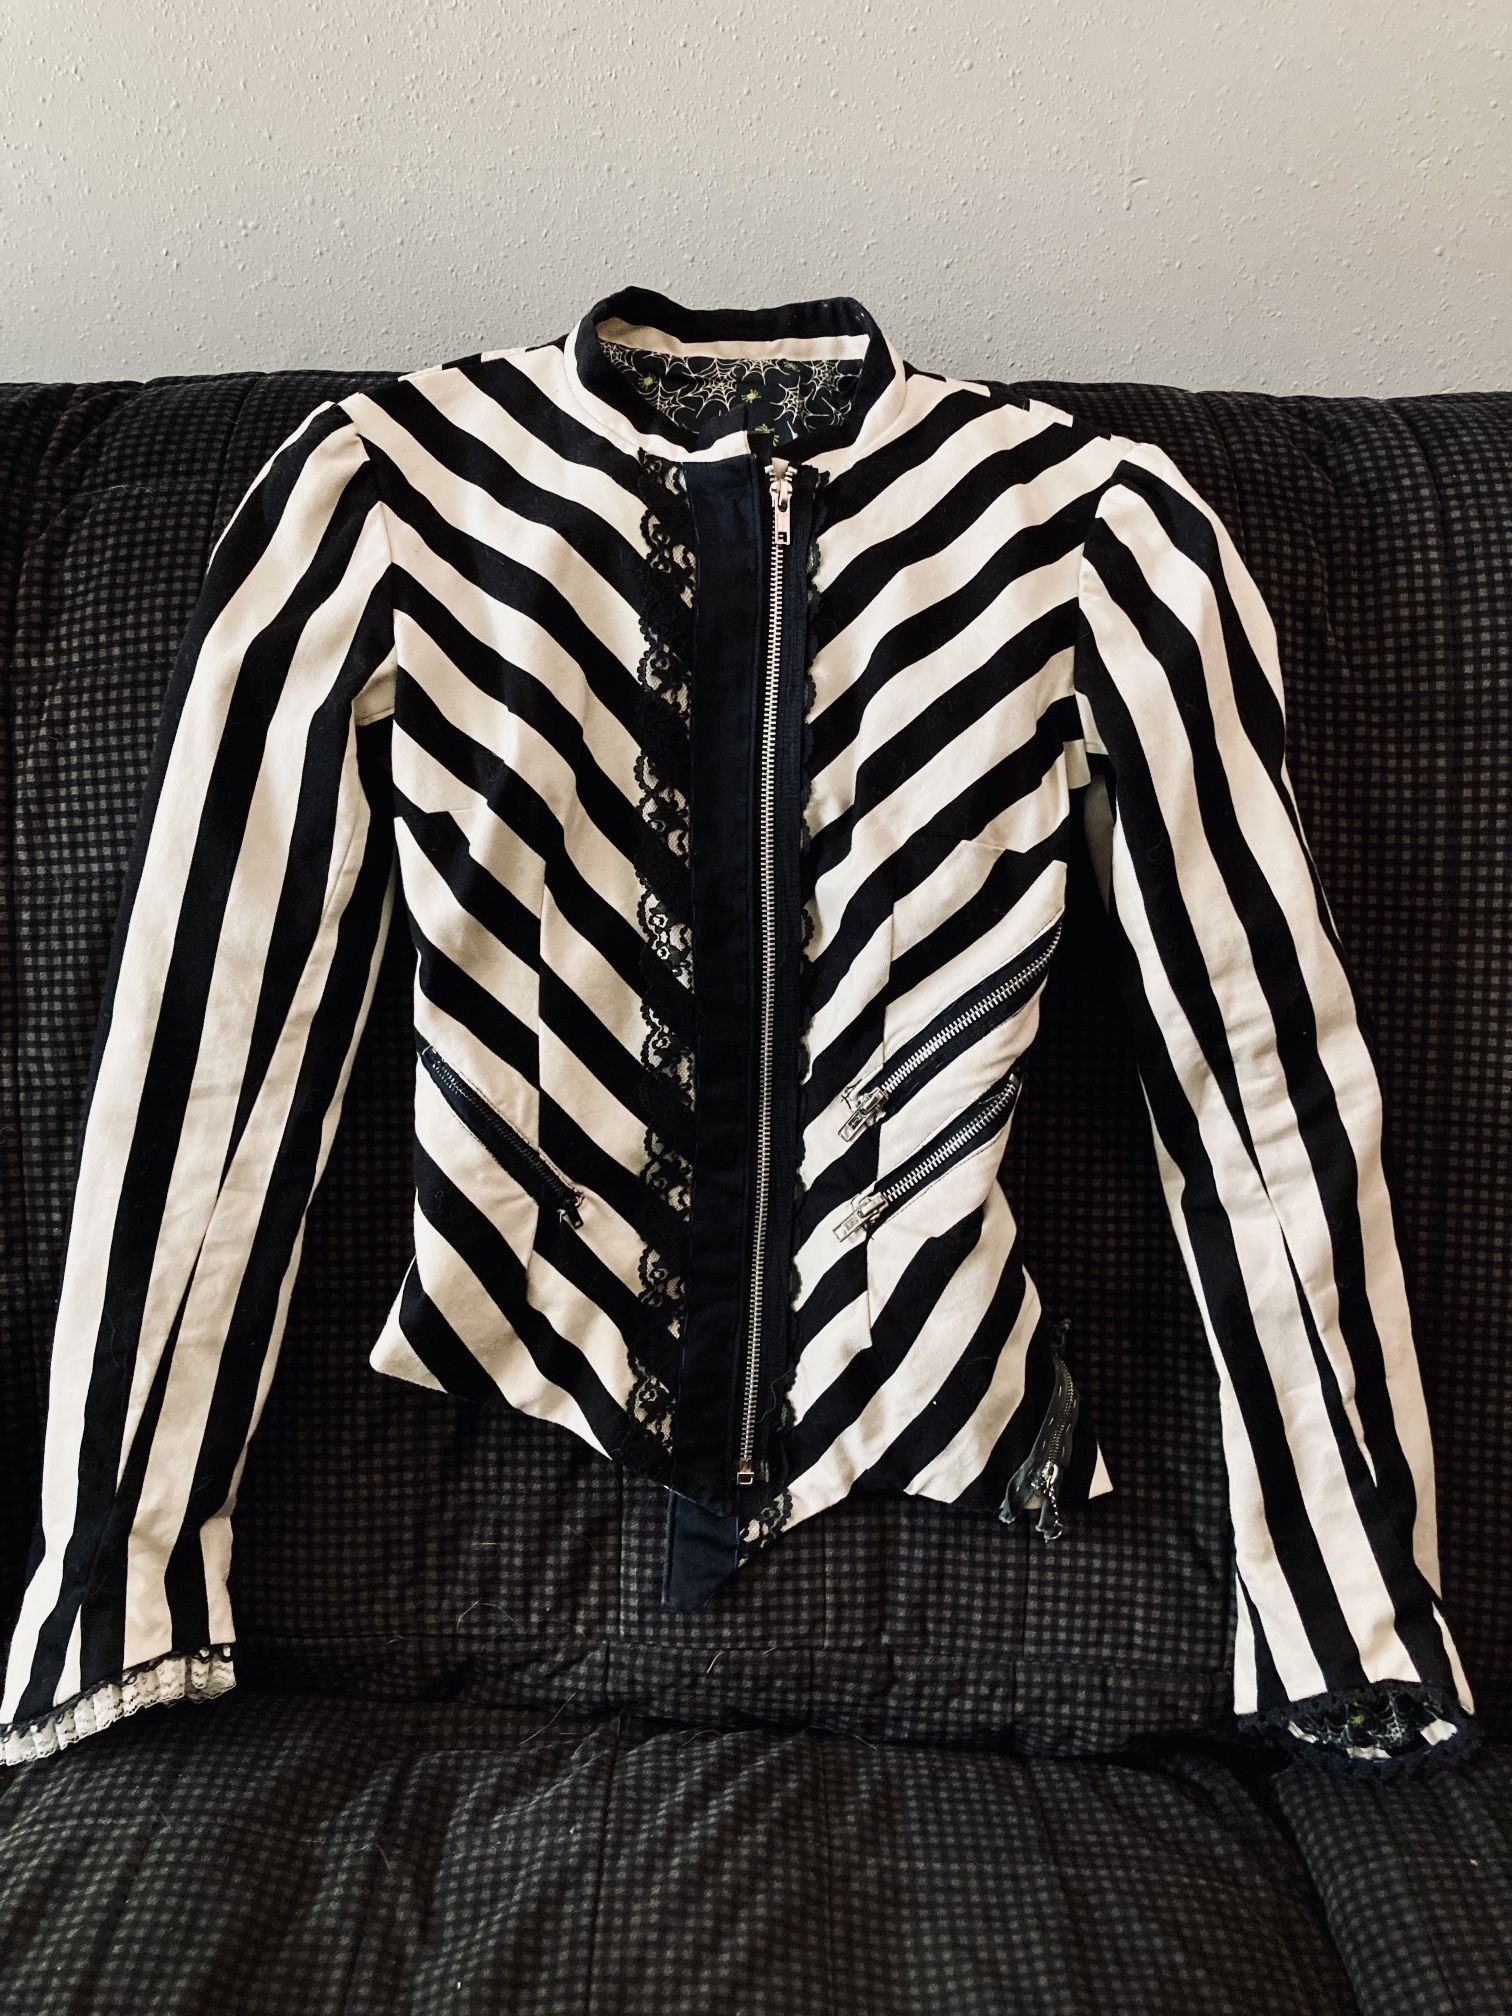 Unique Gothic Striped Jacket